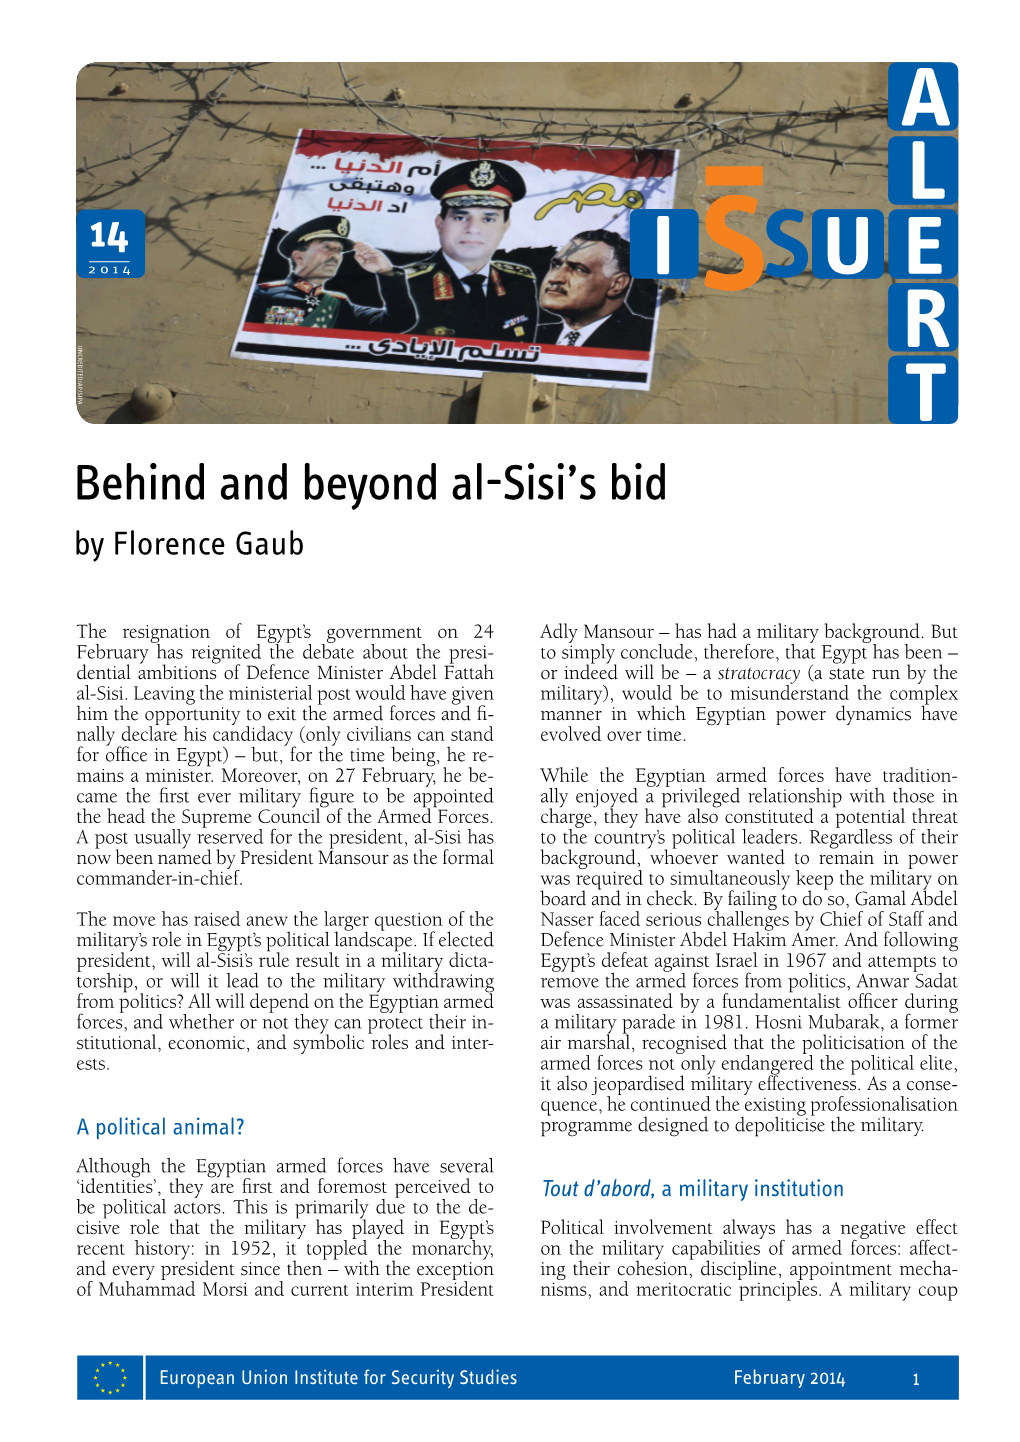 Behind and Beyond Al-Sisi's